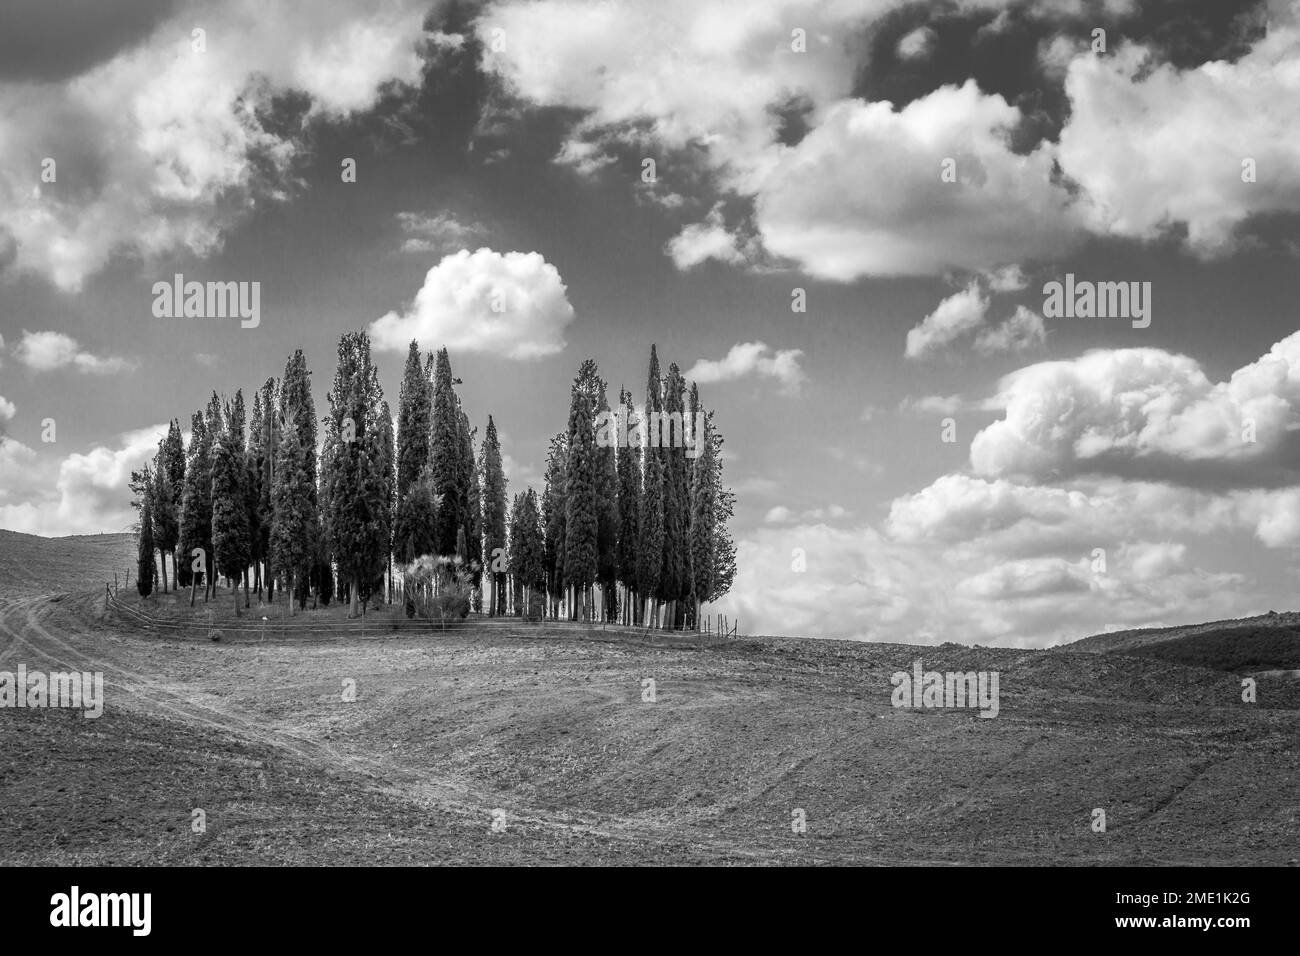 Der berühmte Zypressenkreis im Val d'Orcia der Toskana; die meistfotografierten Bäume der Welt. Italien. Stockfoto